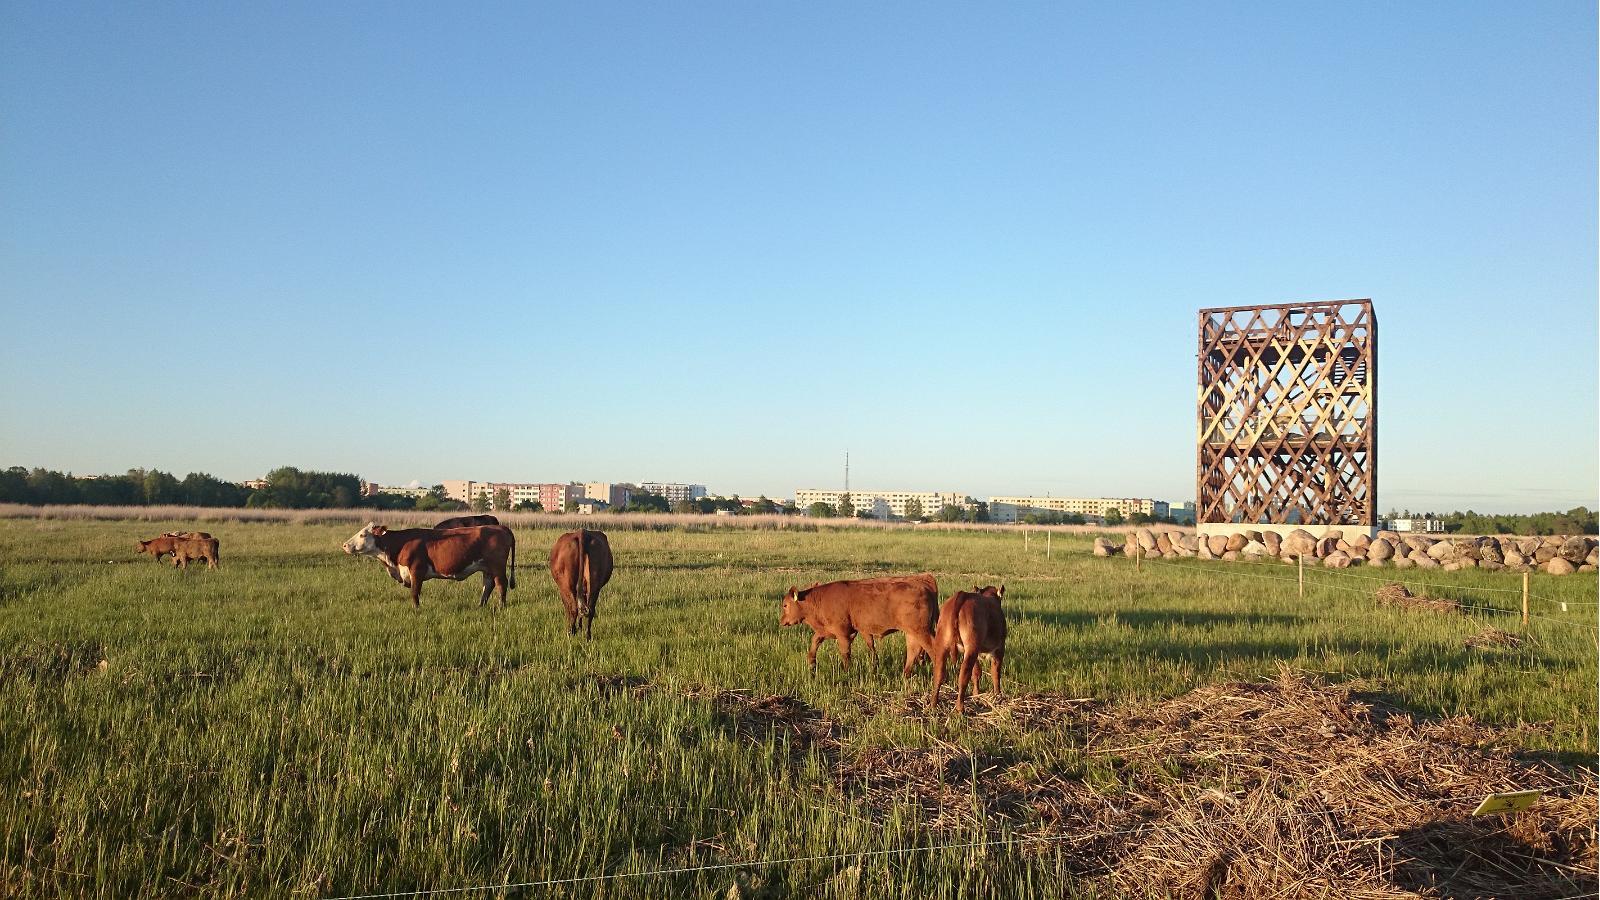 Pērnavas piekrastes pļavu dabas aizsardzības teritorija, skatu torņi un pilsētas govis